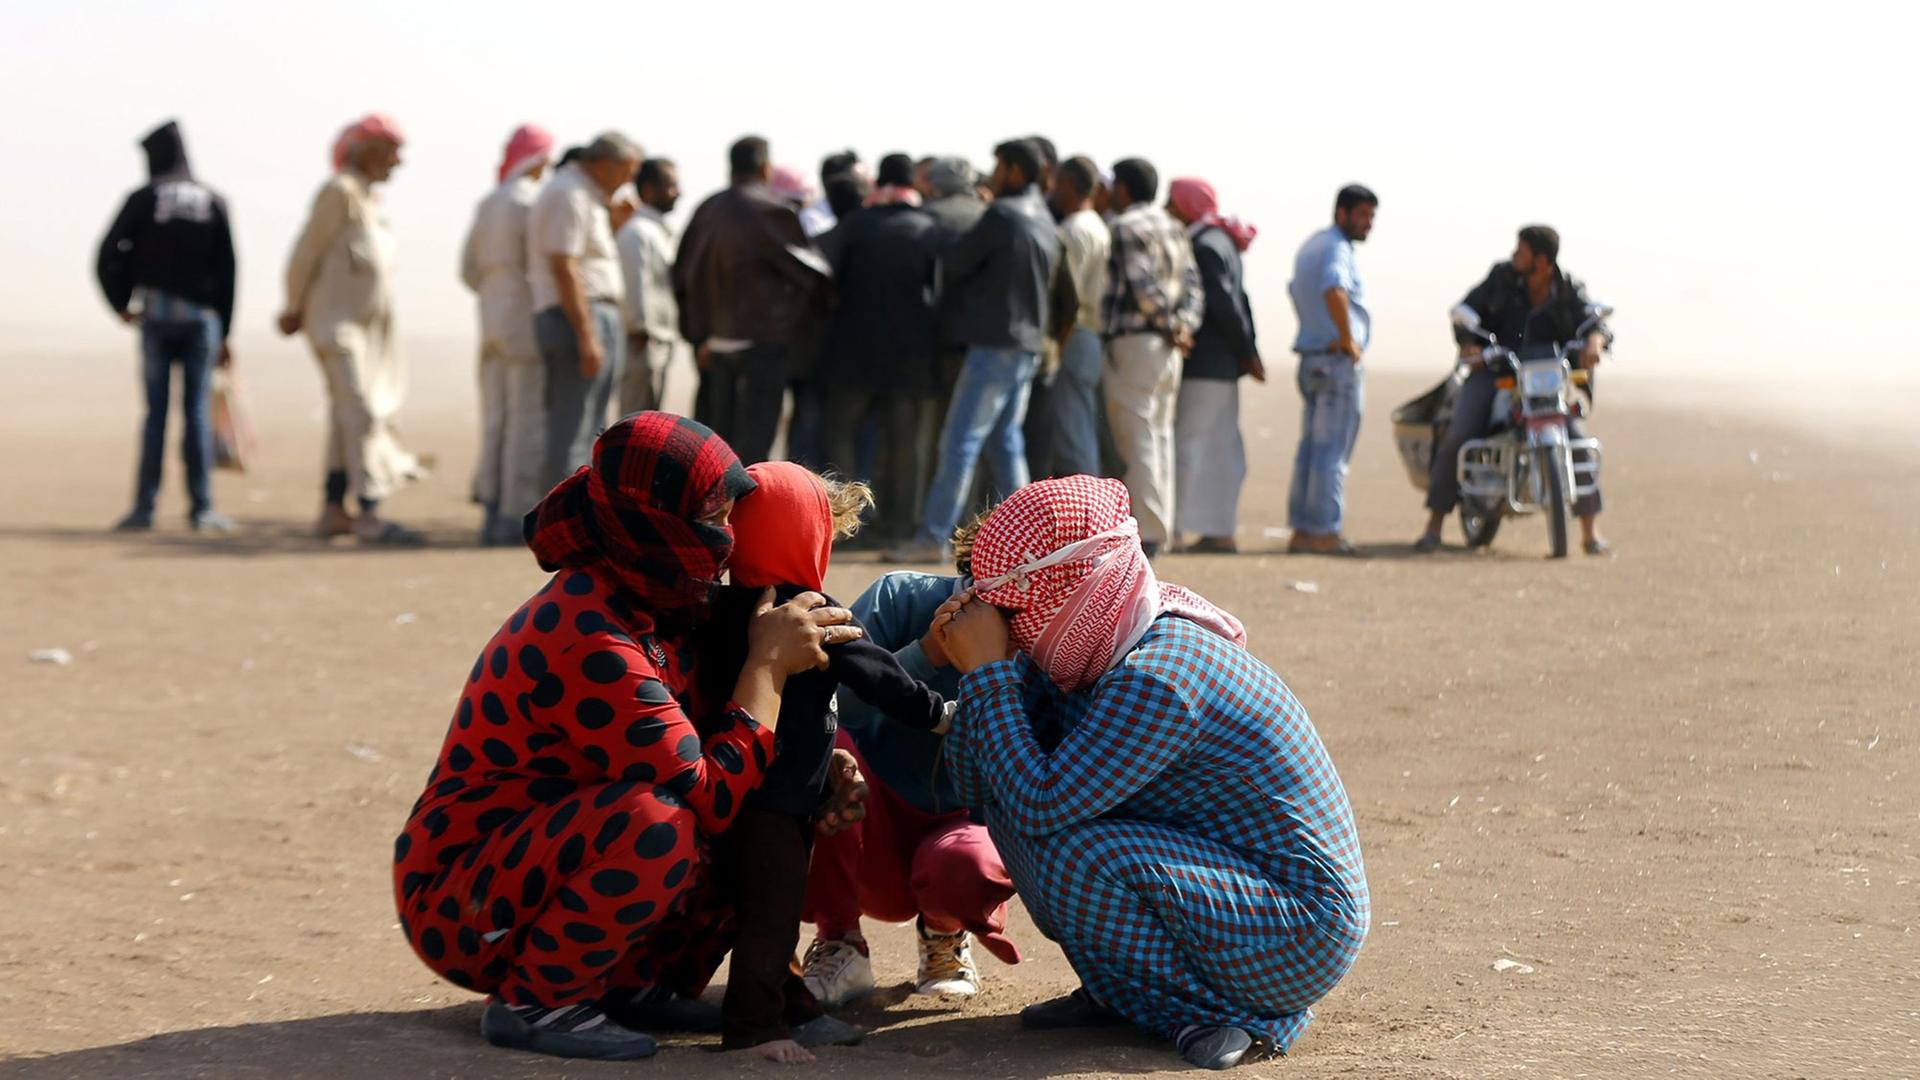 Syrische Flüchtlinge an der Grenze nahe der türkischen Stadt Sanliurfa: Zwei Frauen und zwei Kinder kauern zusammen und schützen sich mit Kopftüchern gegen den Wind. Dahinter steht eine Gruppe von Flüchtlingen Schlange. 